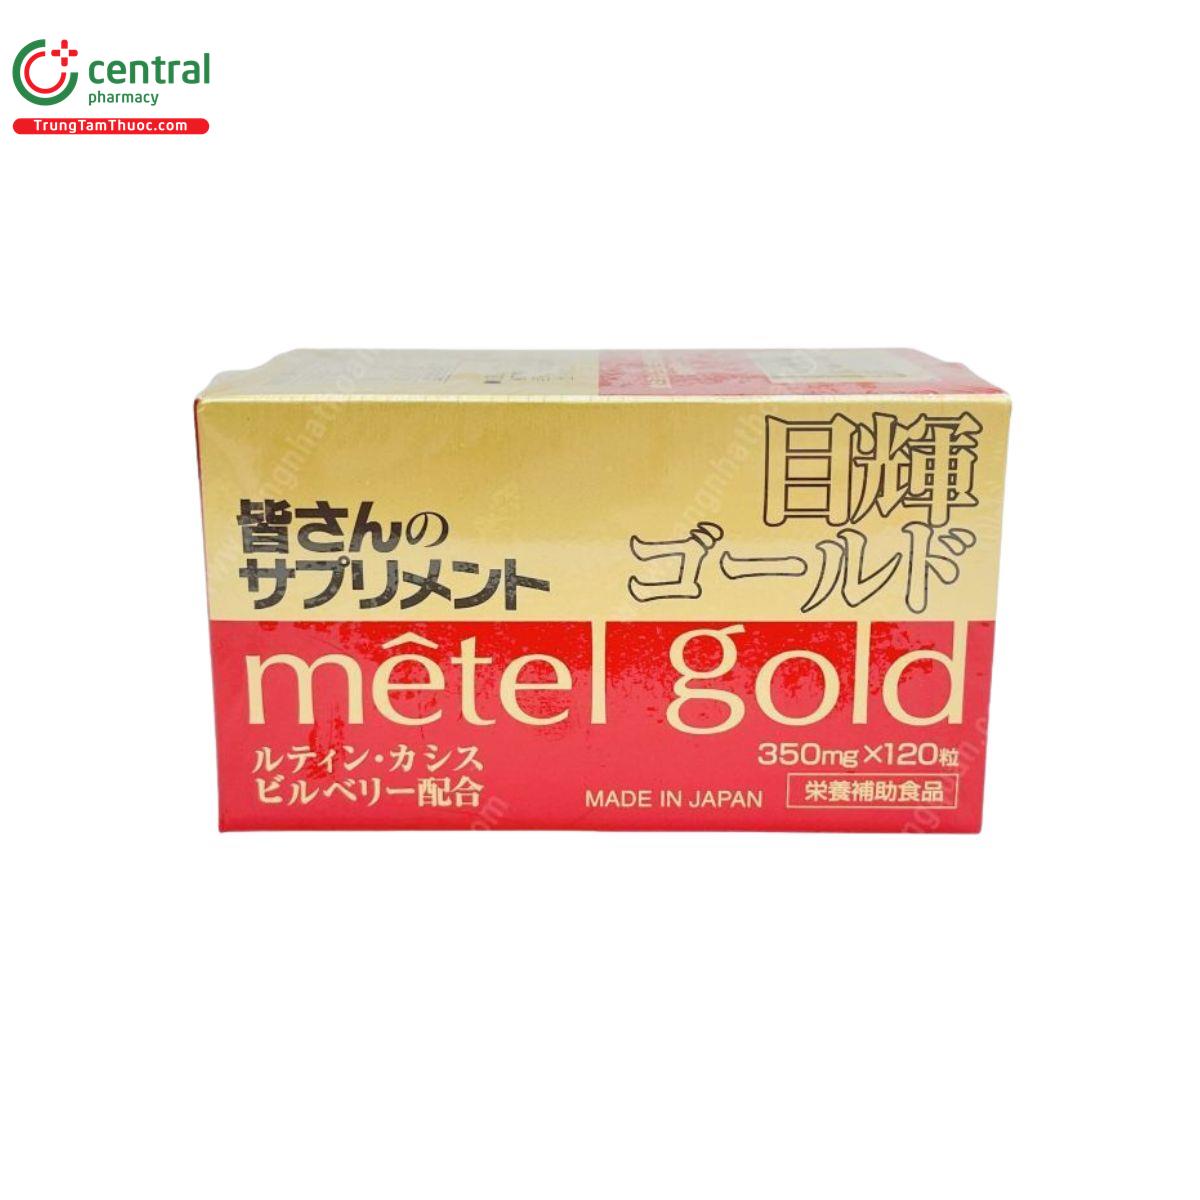 metel gold 9 Q6048